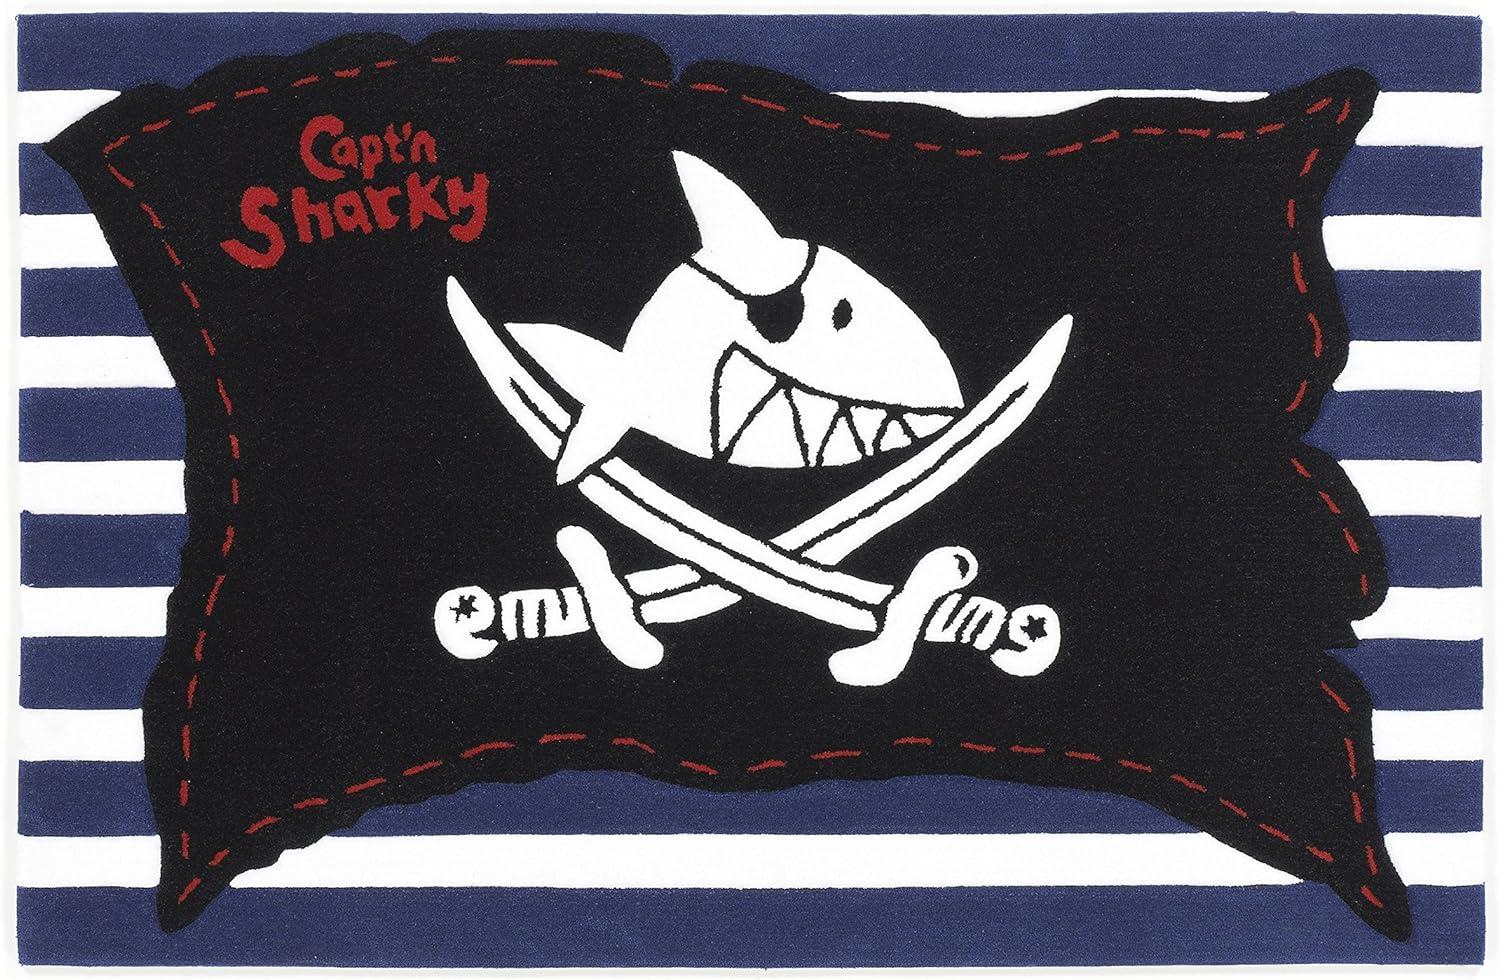 Kinderteppich- Der Pirat "Capt'n Sharky" und seine Freunde 190 x 130 cm Bild 1